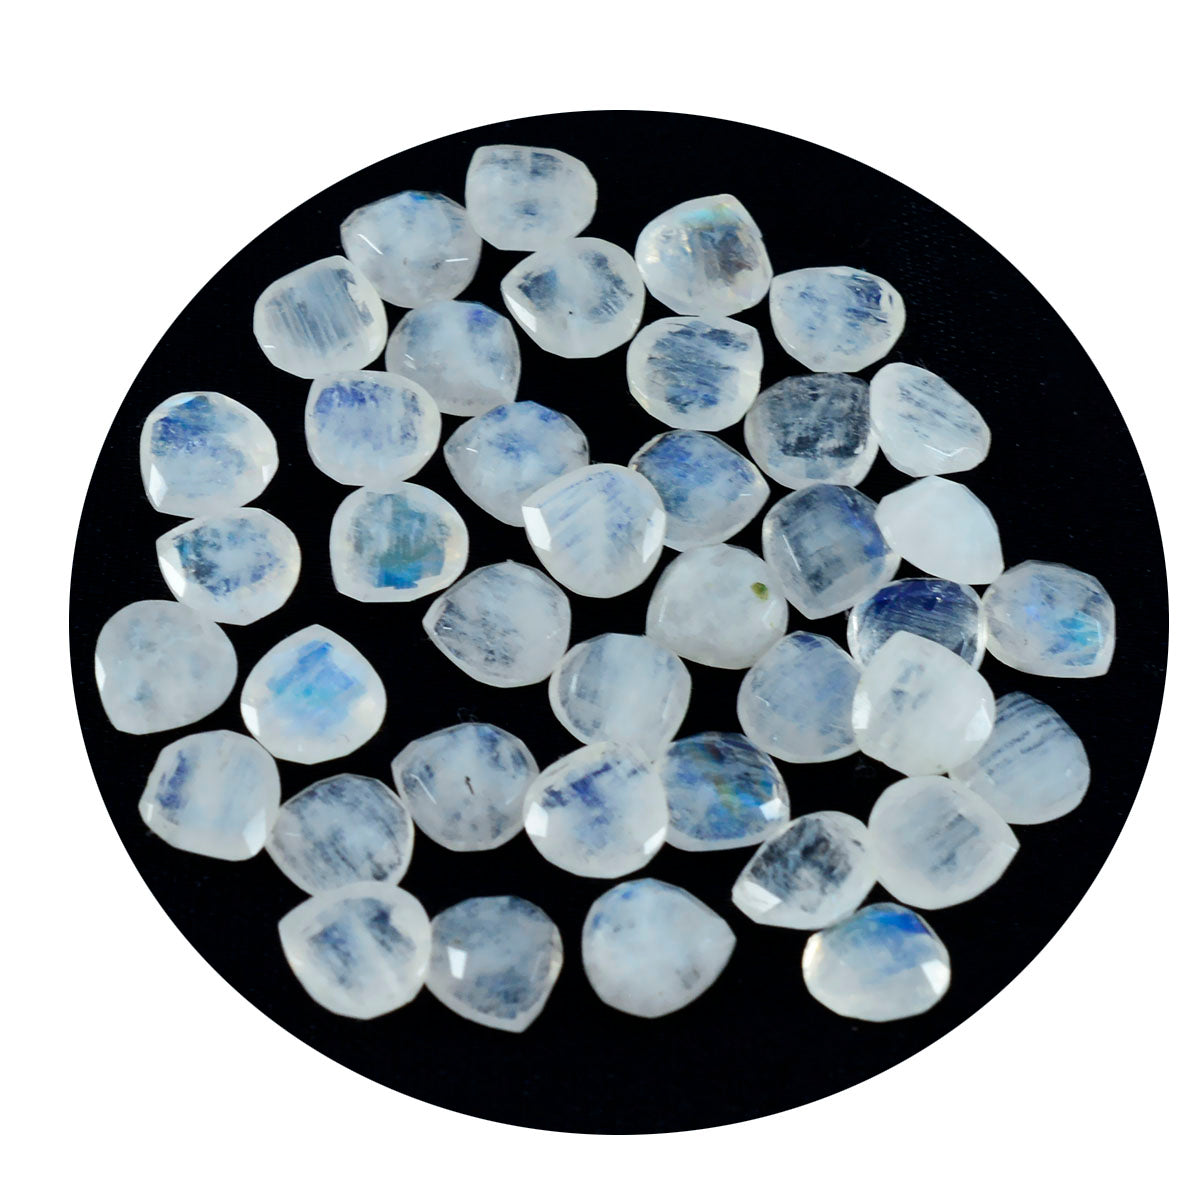 riyogems 1 шт., белые радужные лунные камни, ограненные 6x6 мм, в форме сердца, привлекательные качественные драгоценные камни